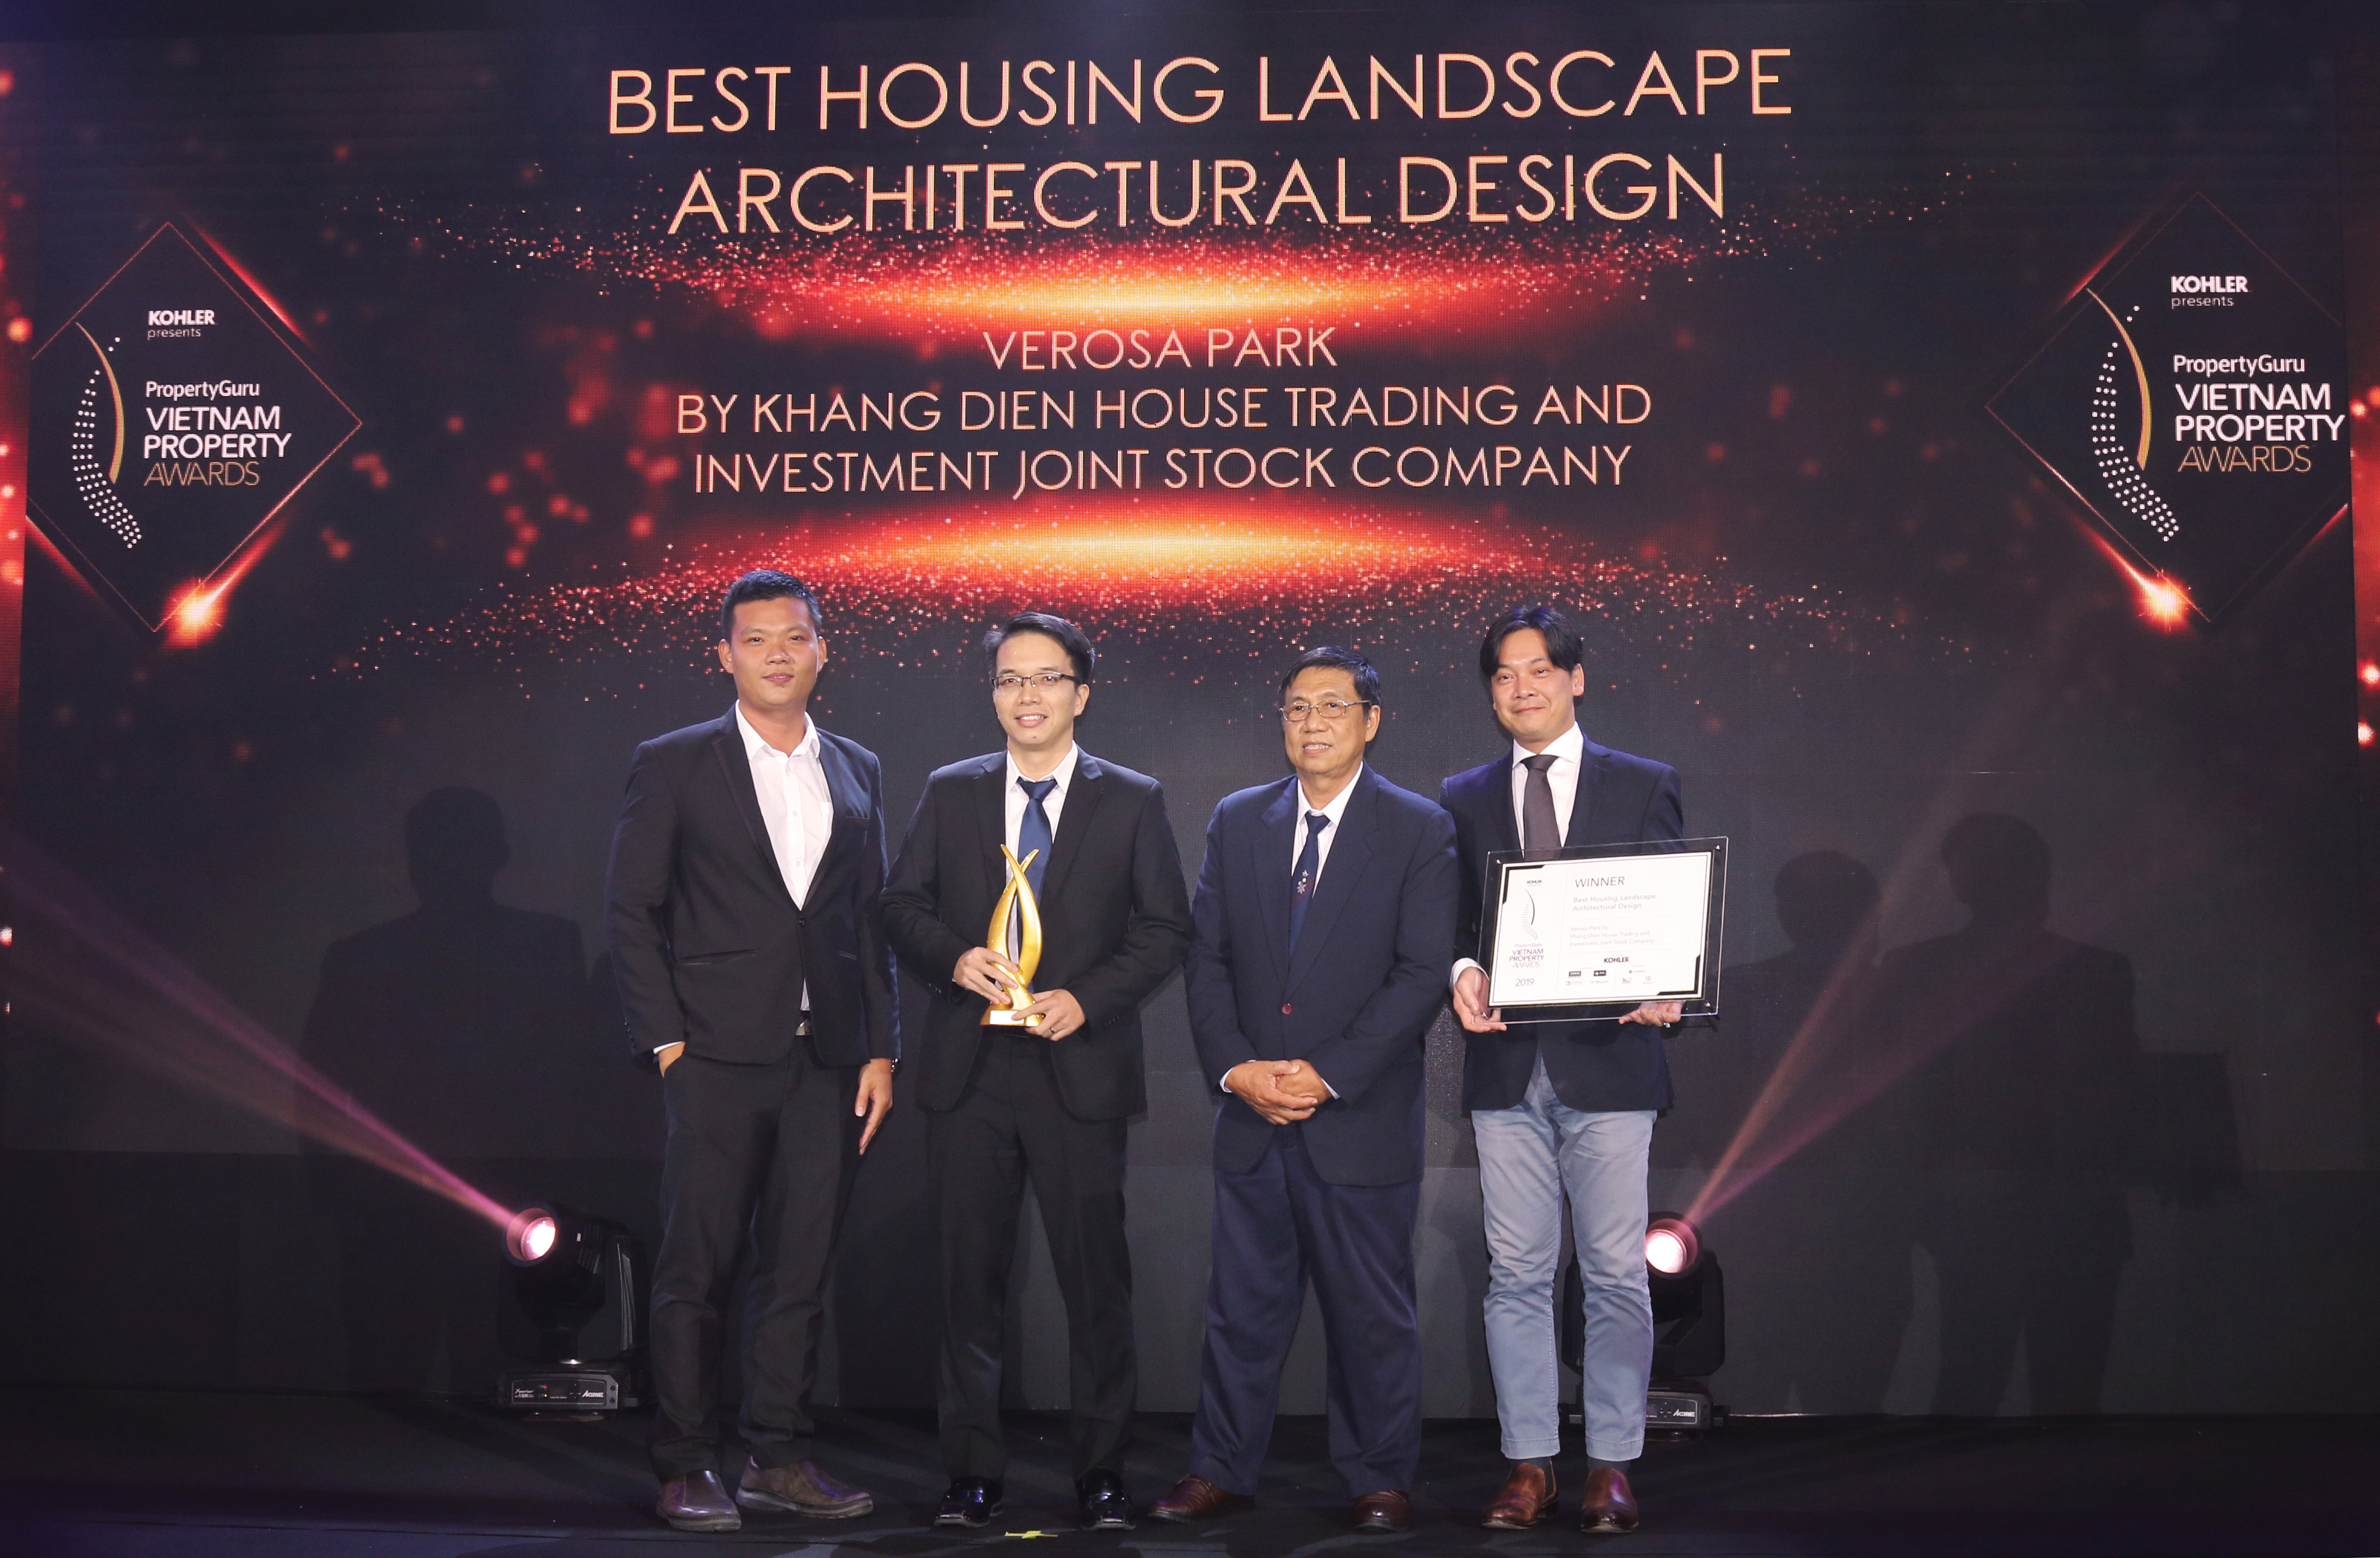 Chính thức công bố doanh nghiệp và dự án đạt giải Vietnam Property Awards 2019